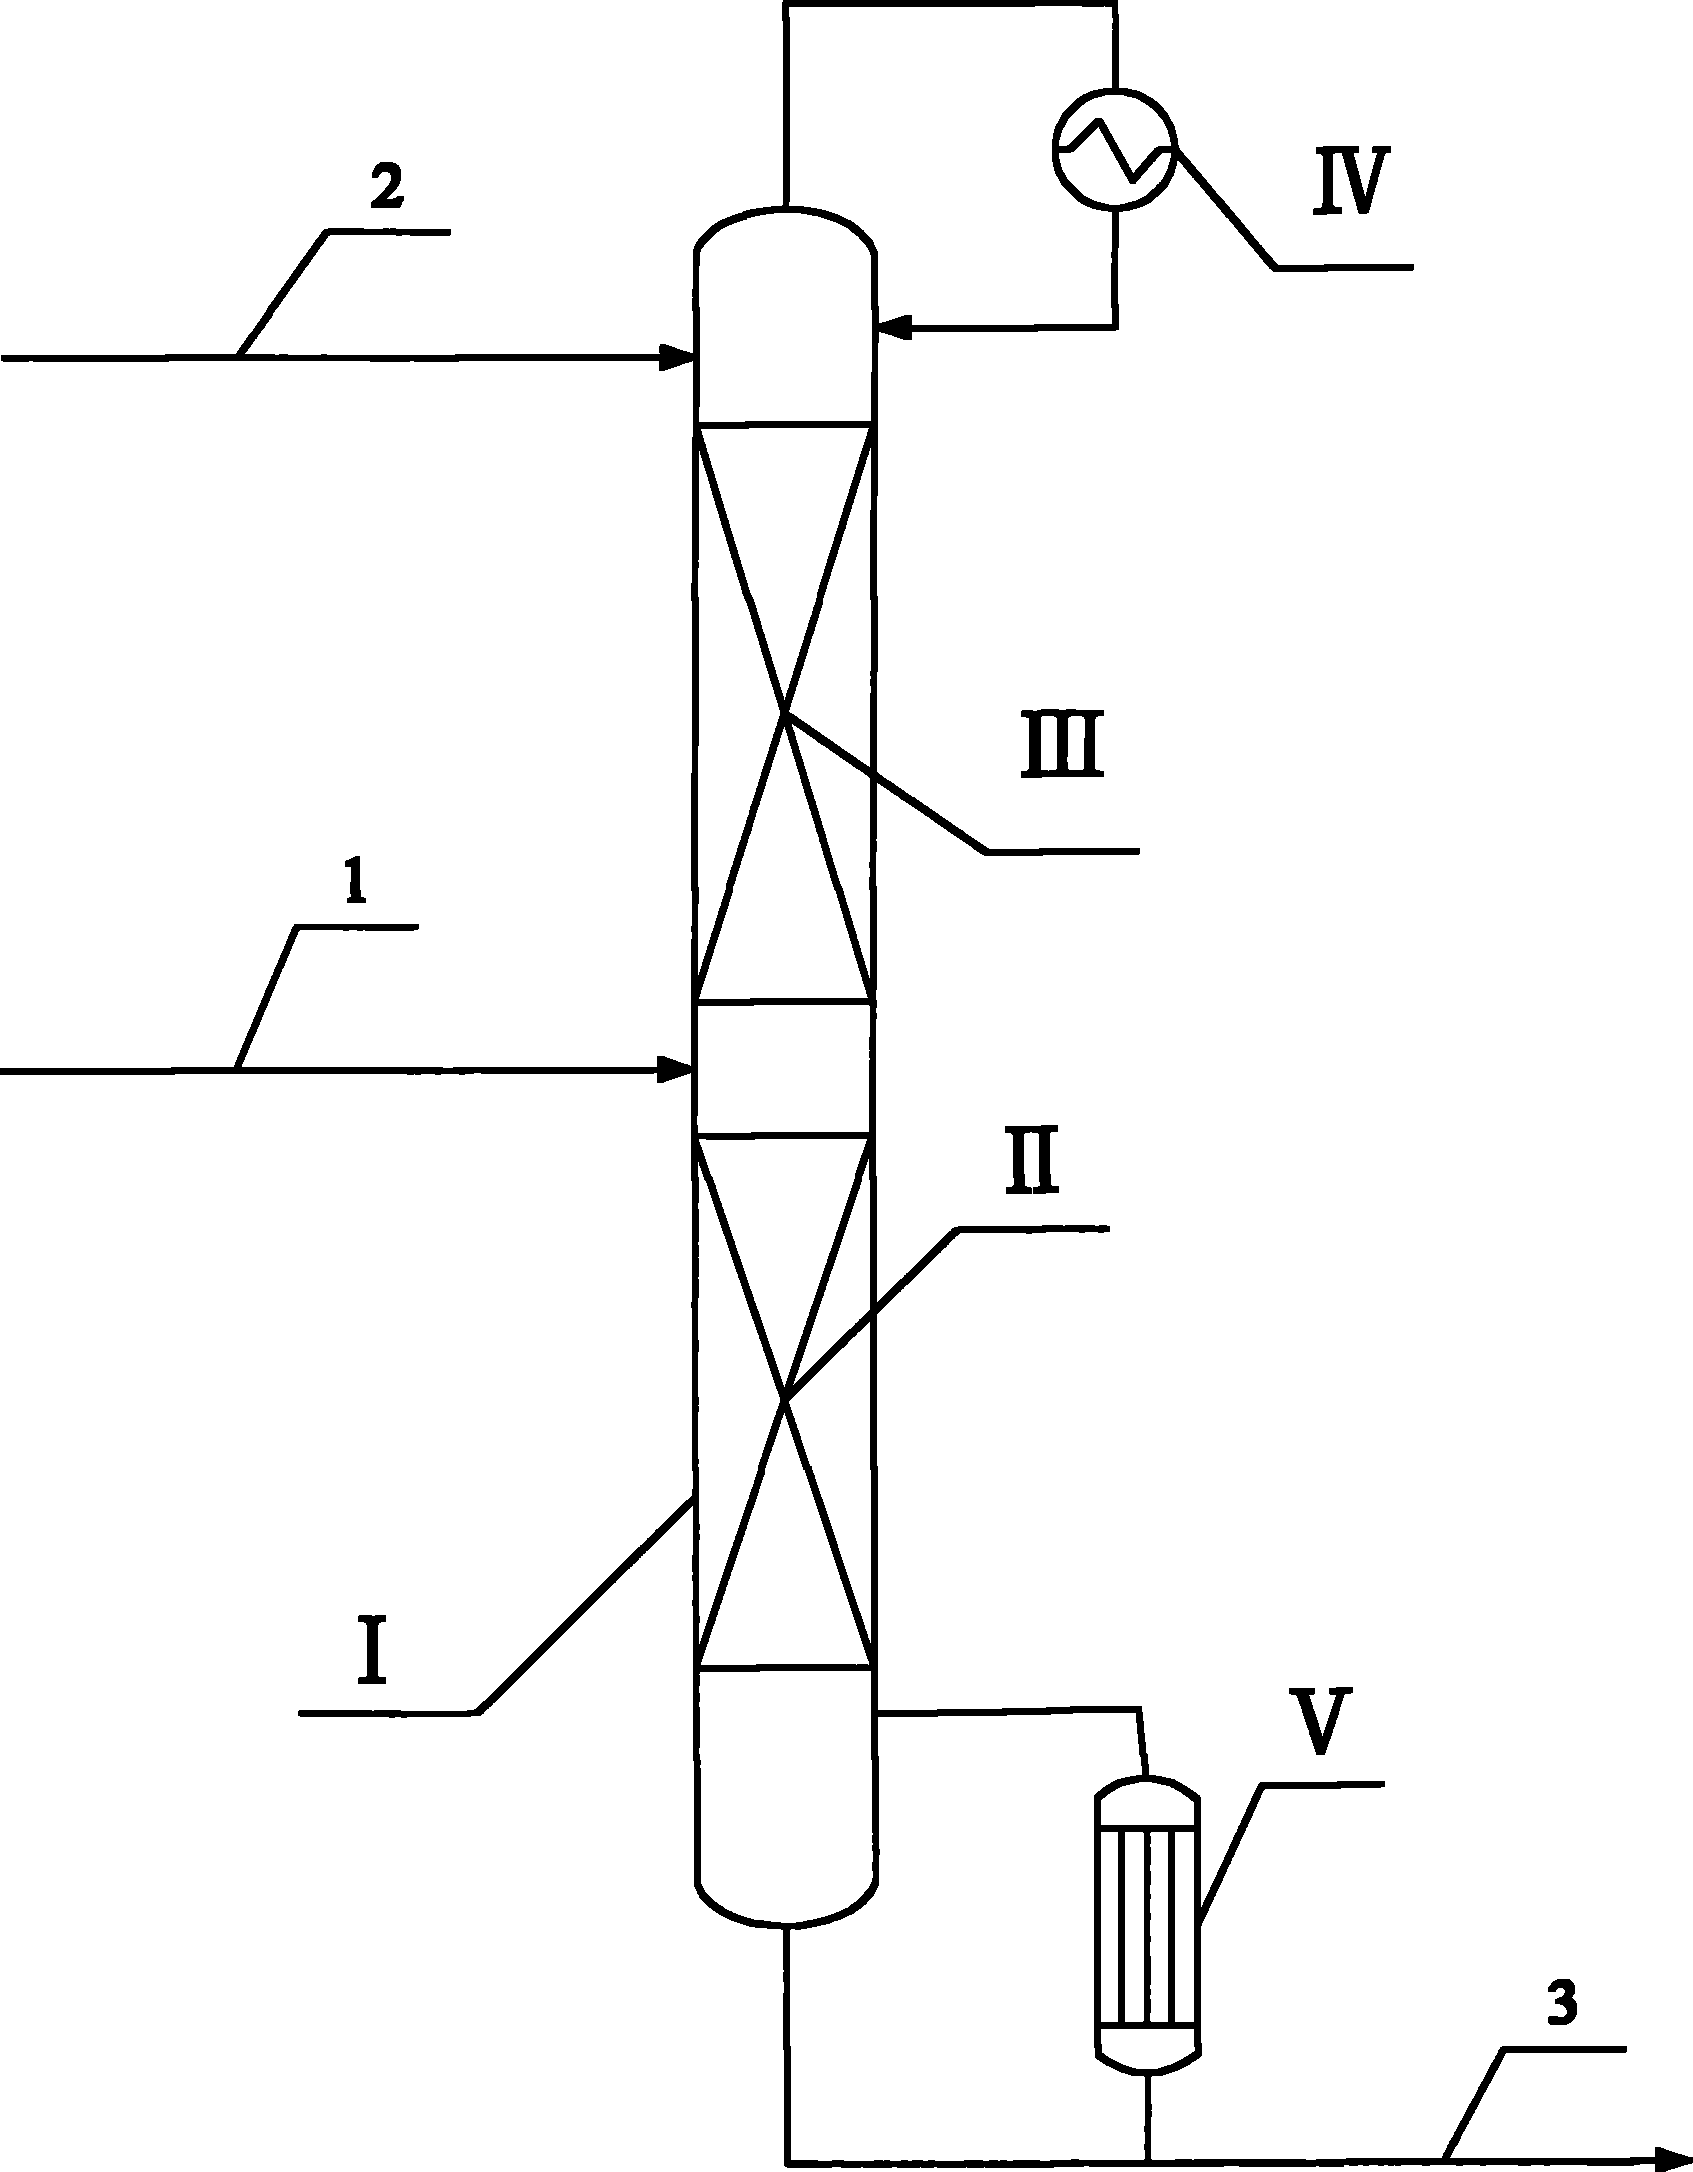 Method for preparing polyoxymethylene dimethyl ether